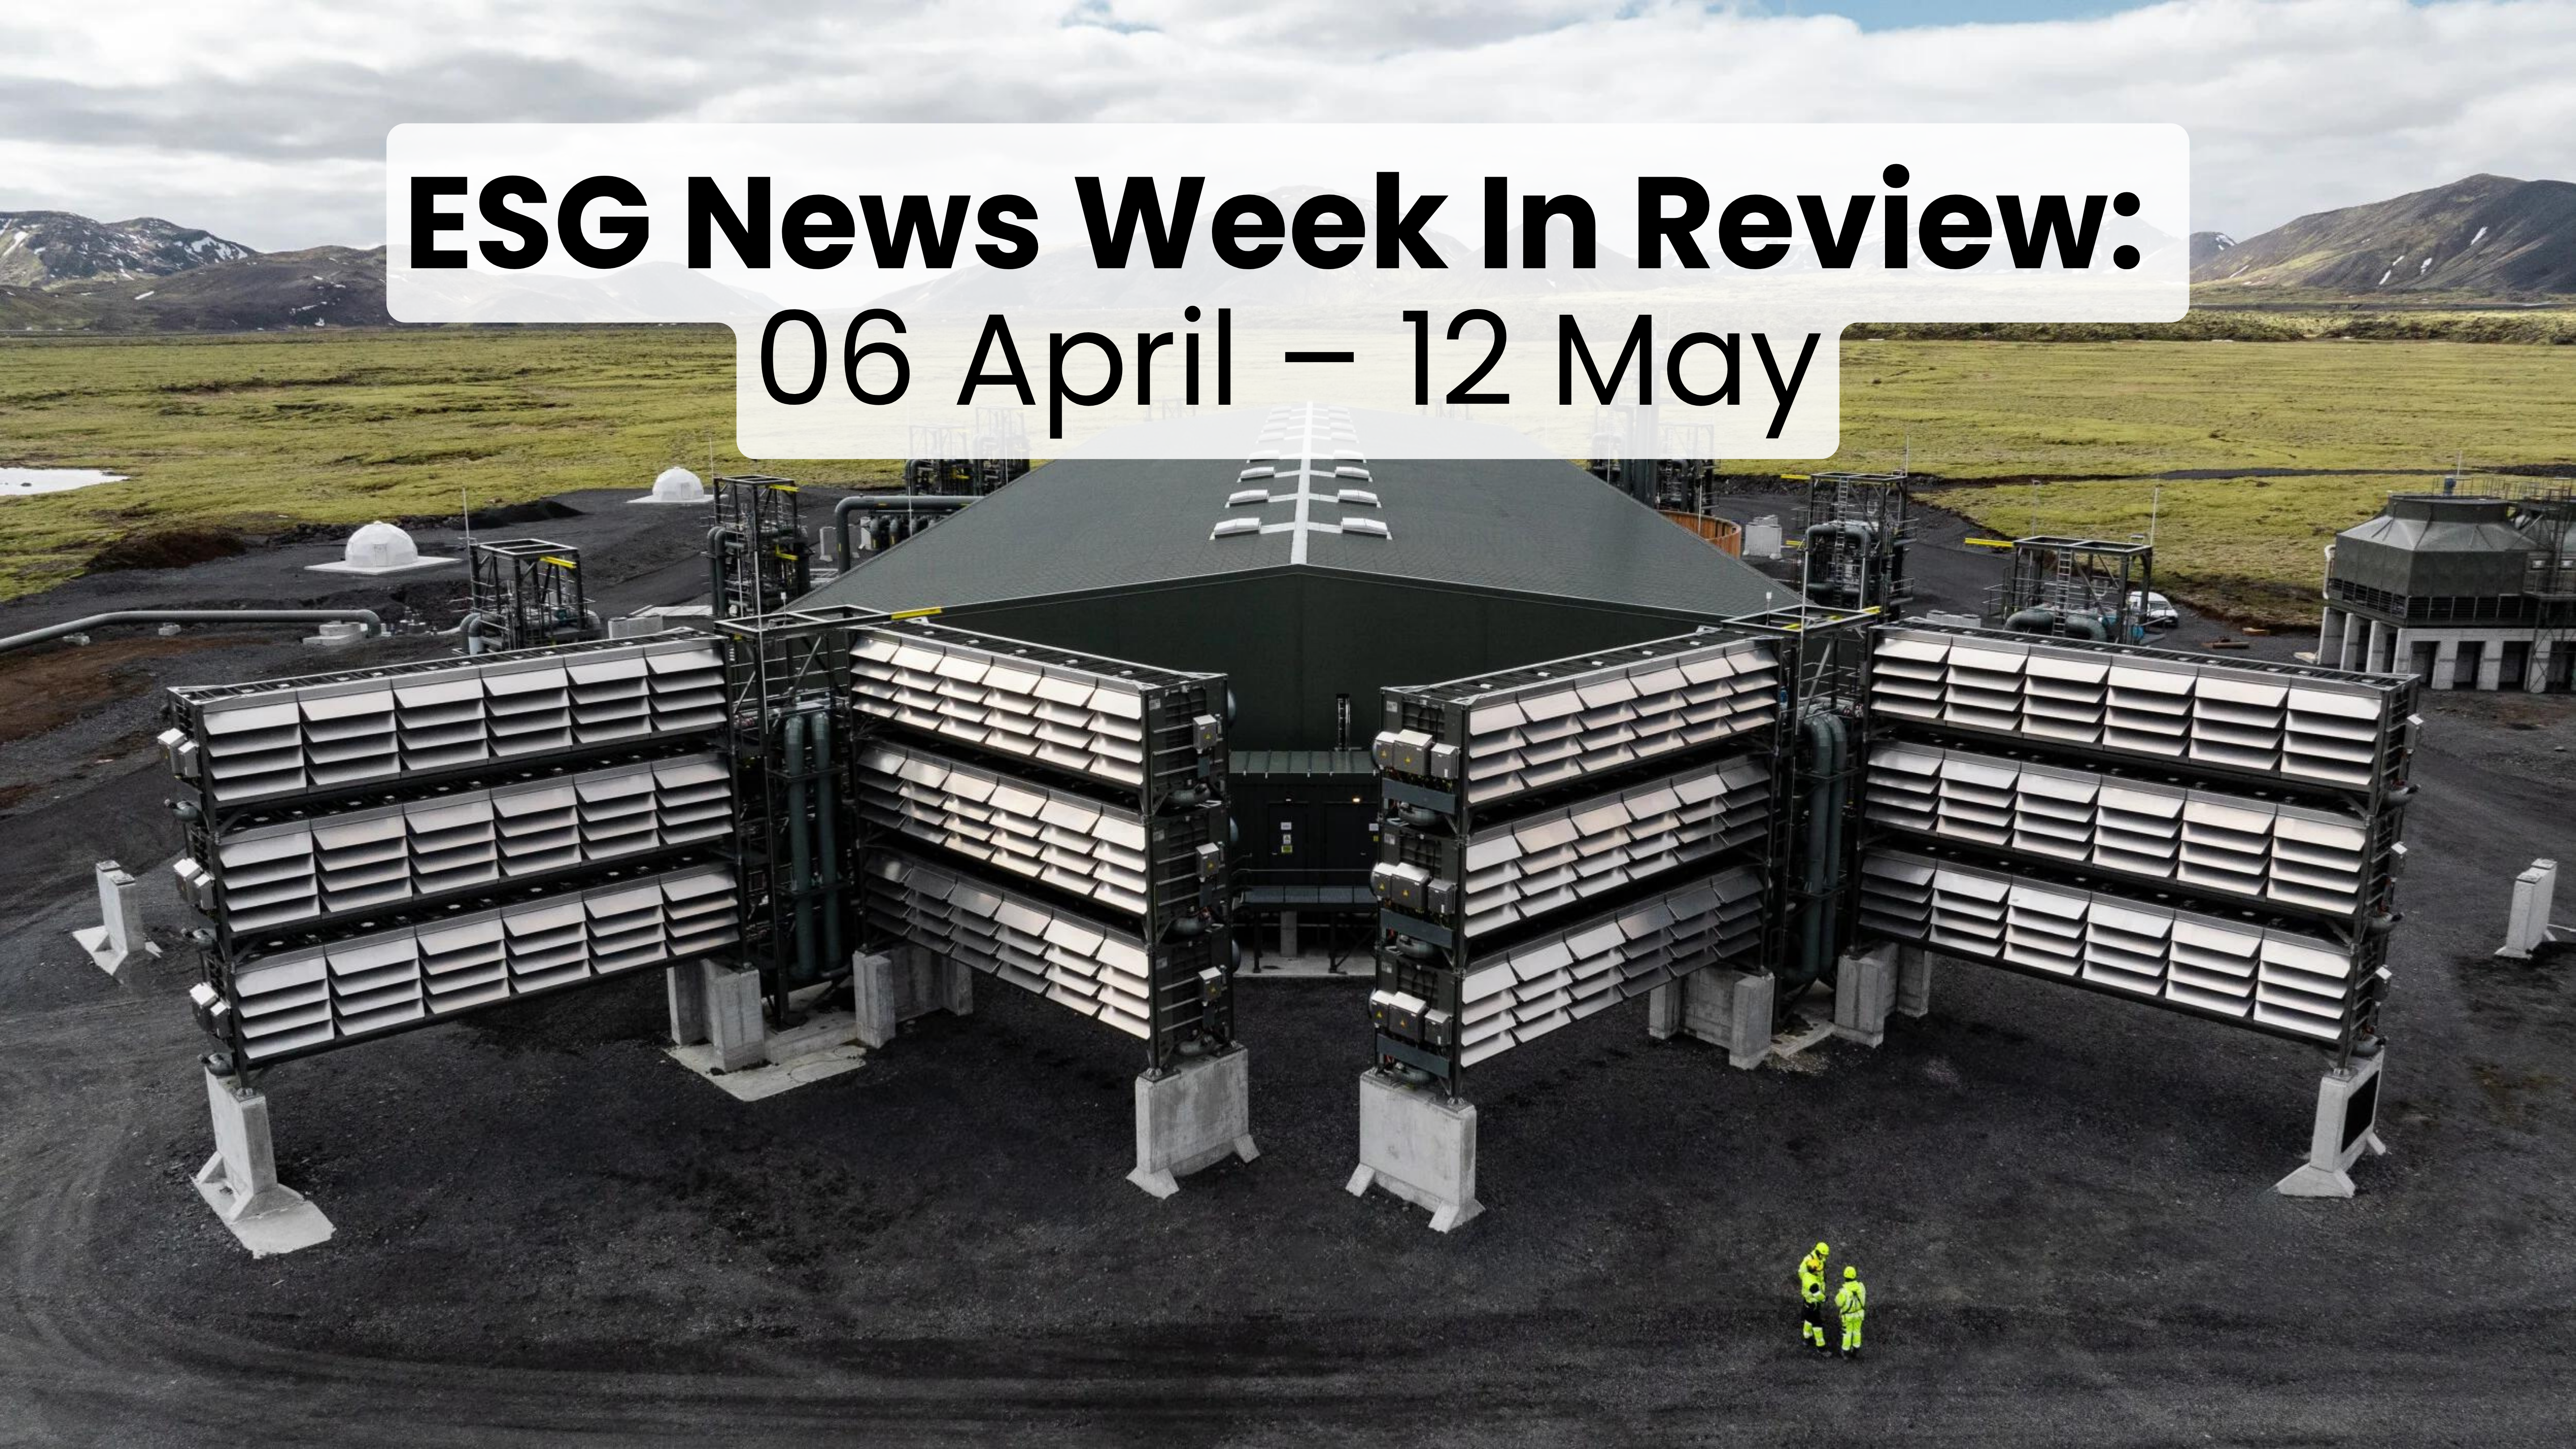 Rückblick auf die ESG-News-Woche vom 06. April bis 12. Mai